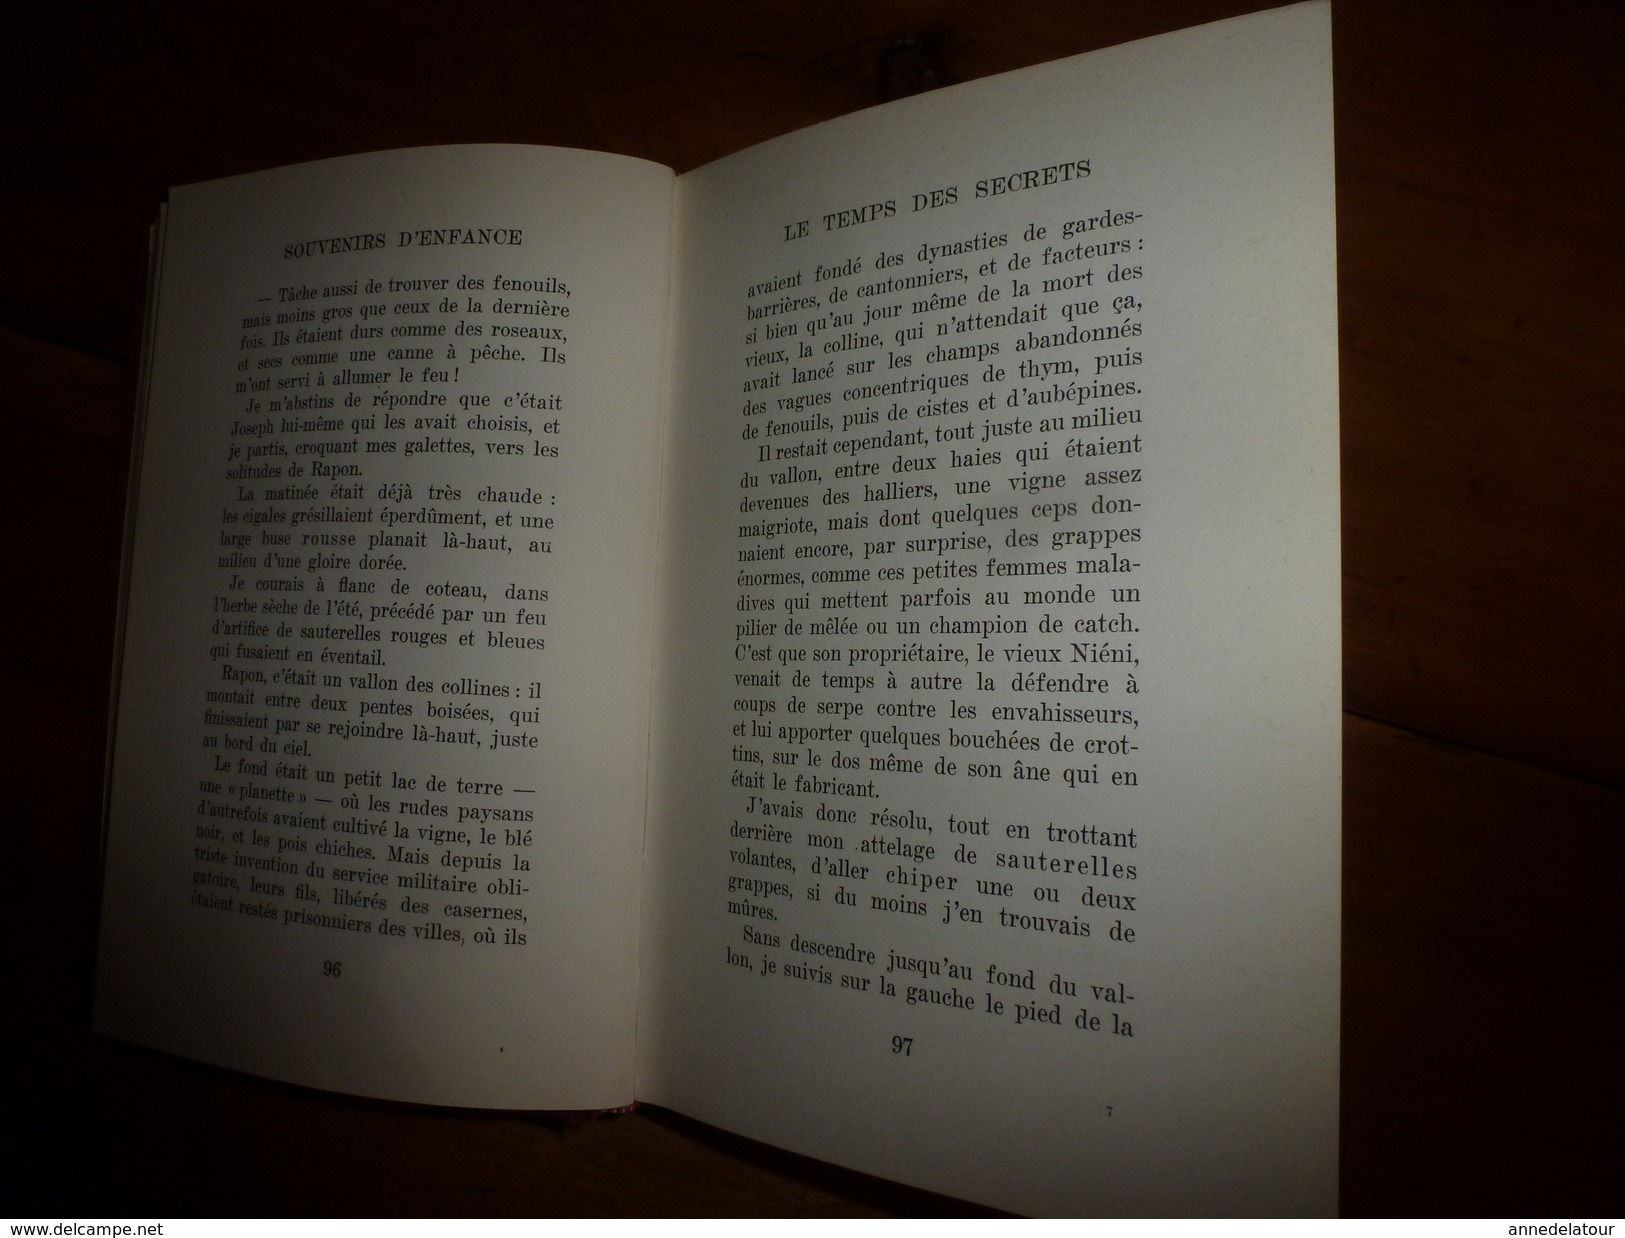 1961-62-64 : Lot de 3 livres de Marcel Pagnol ----> Manon des Sources,La Gloire de mon Père,Le Temps des Secrets.